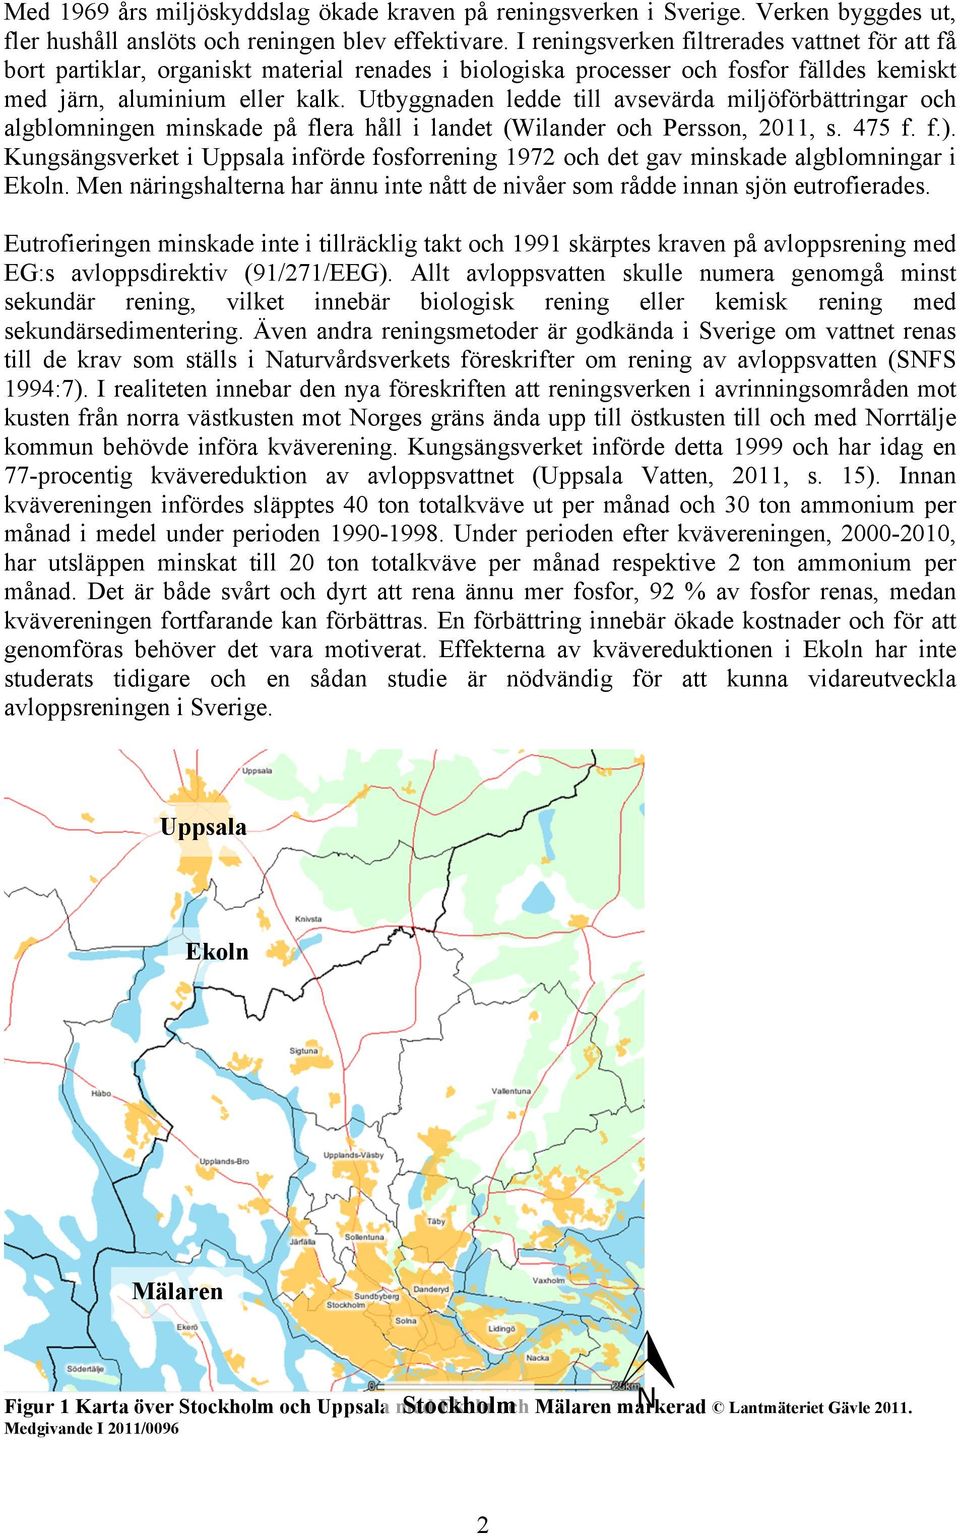 Utbyggnaden ledde till avsevärda miljöförbättringar och algblomningen minskade på flera håll i landet (Wilander och Persson, 2011, s. 475 f. f.).